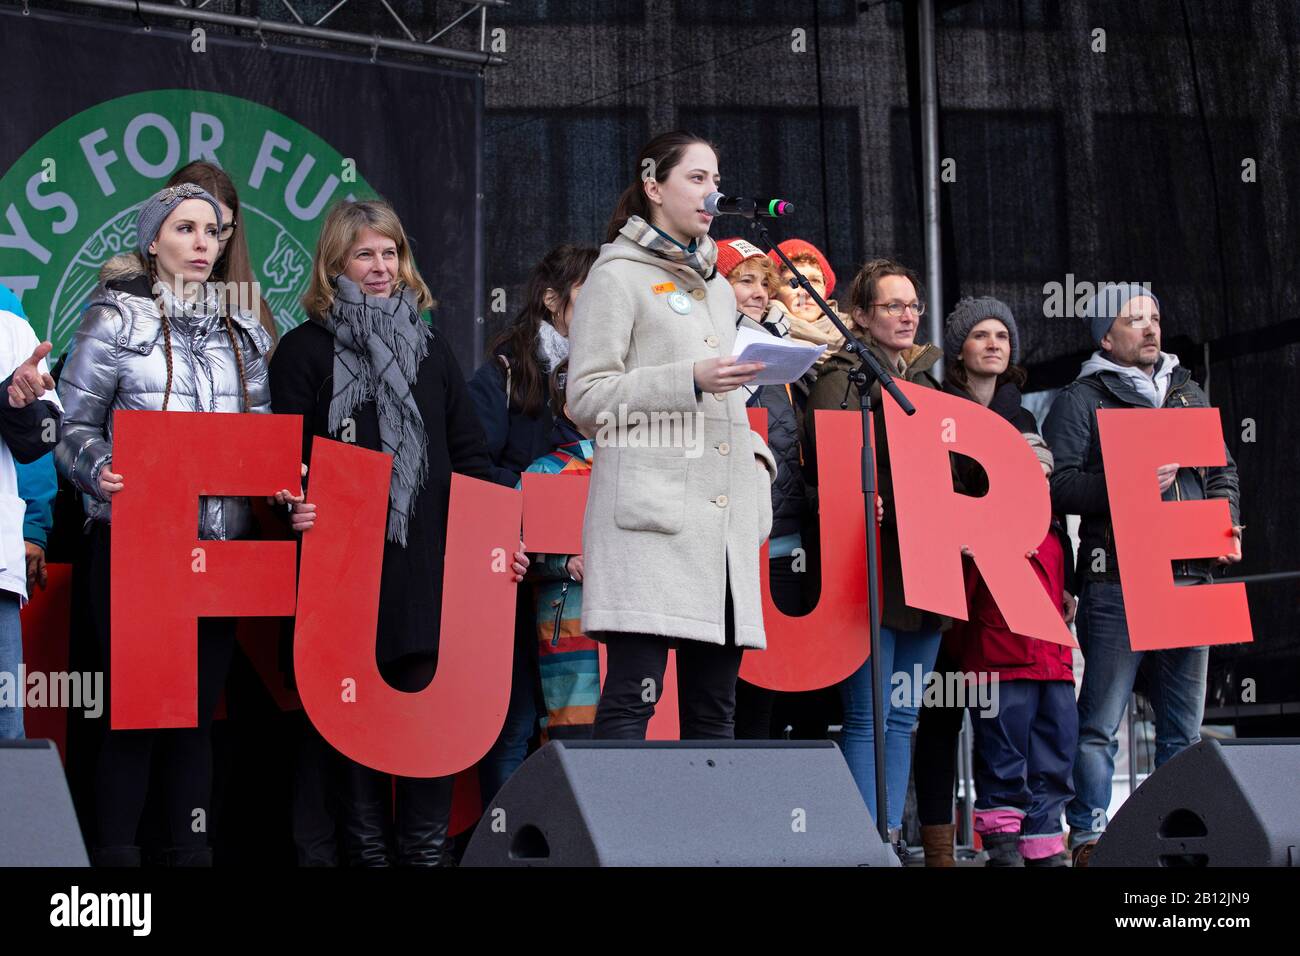 Viernes para manifestación Futura en Hamburgo, Alemania, el 21 de febrero de 2020 Foto de stock